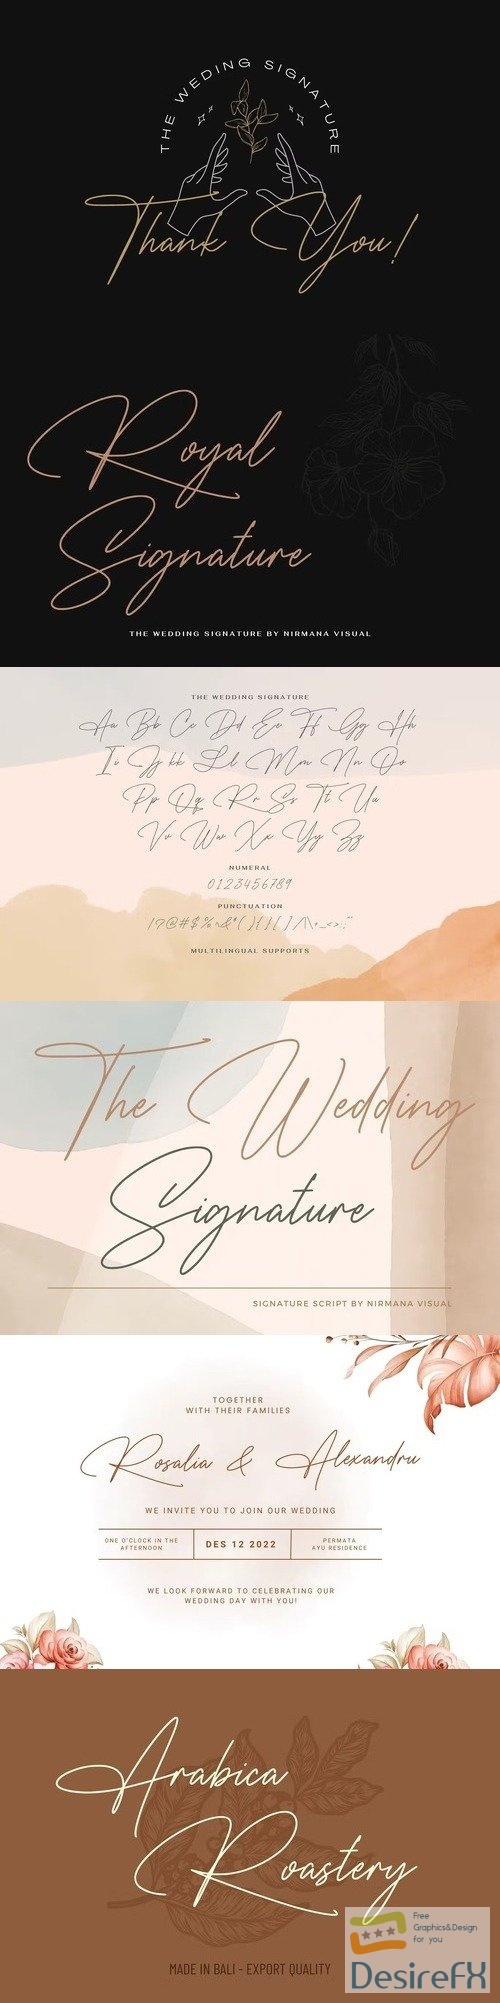 The Wedding Signature - Elegant Script